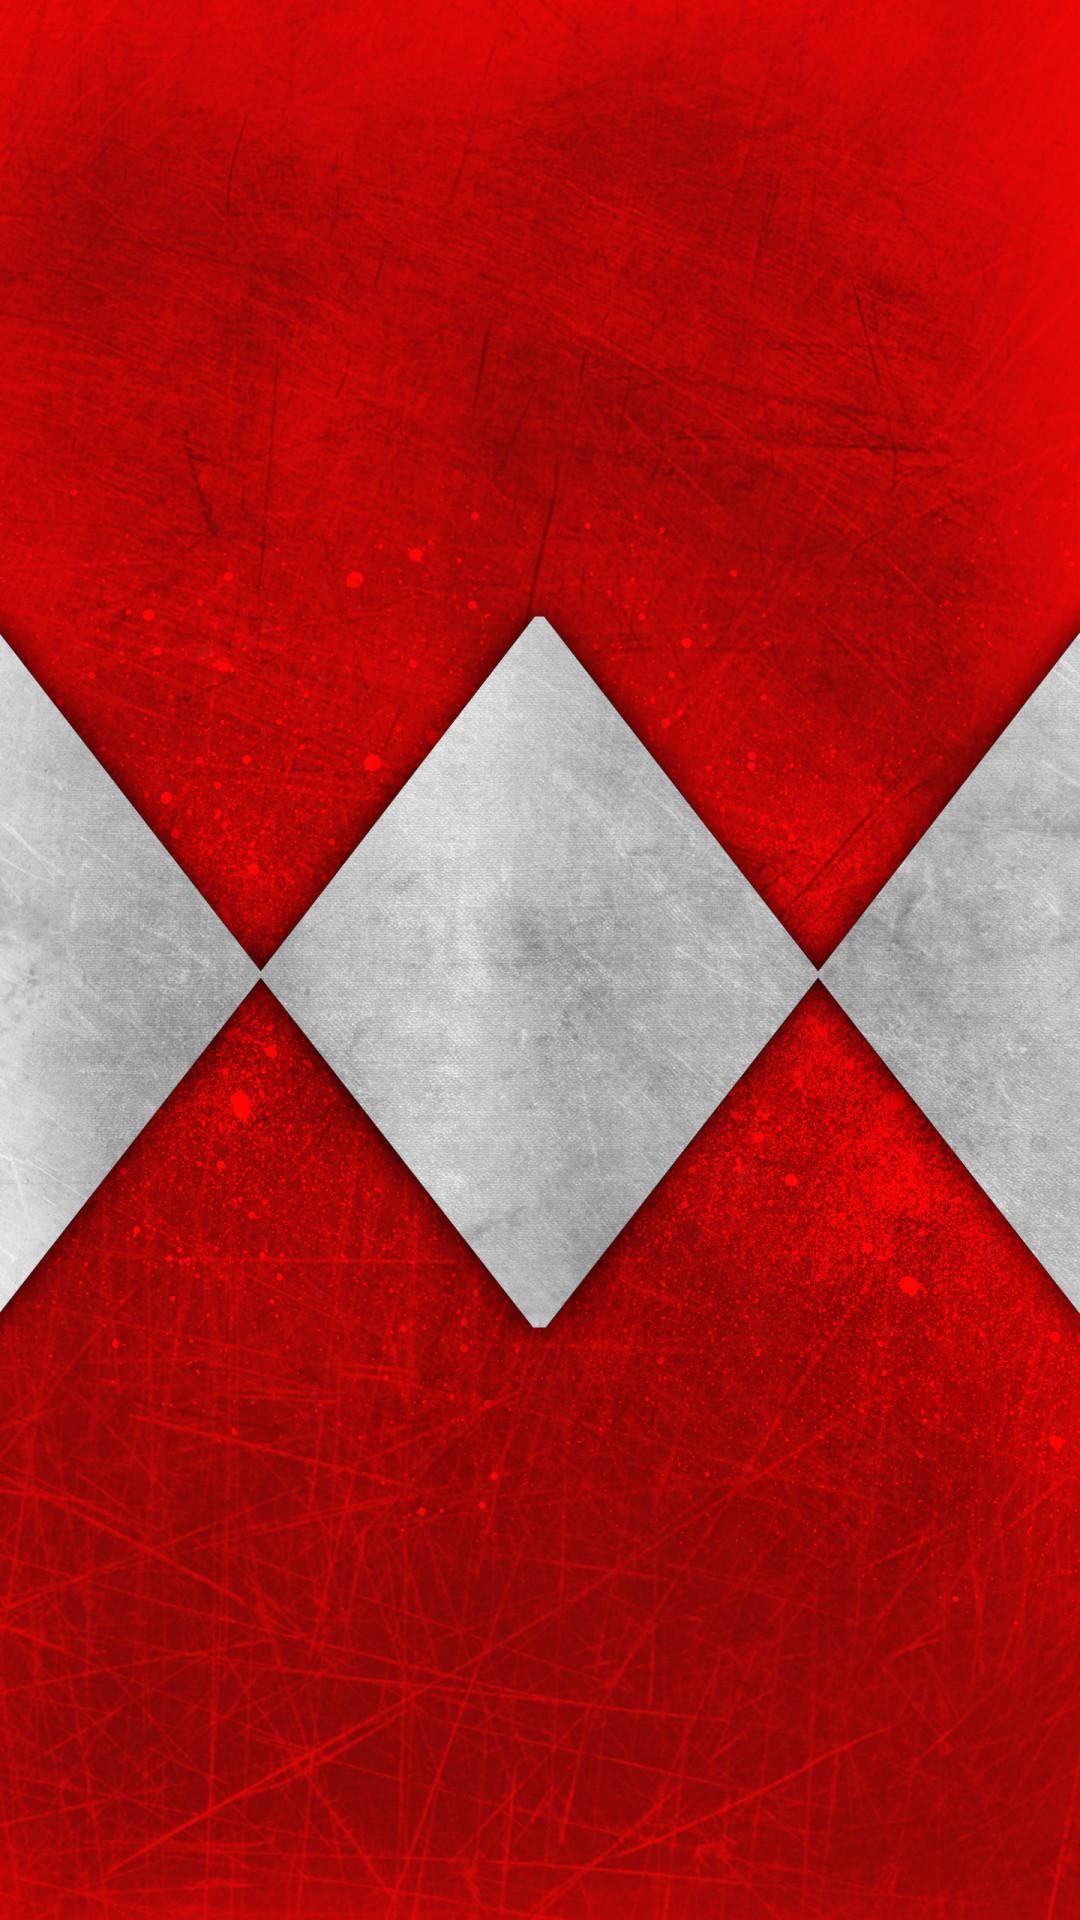 Red Ranger Wallpaper - Power Rangers Iphone Wallpaper Hd - HD Wallpaper 